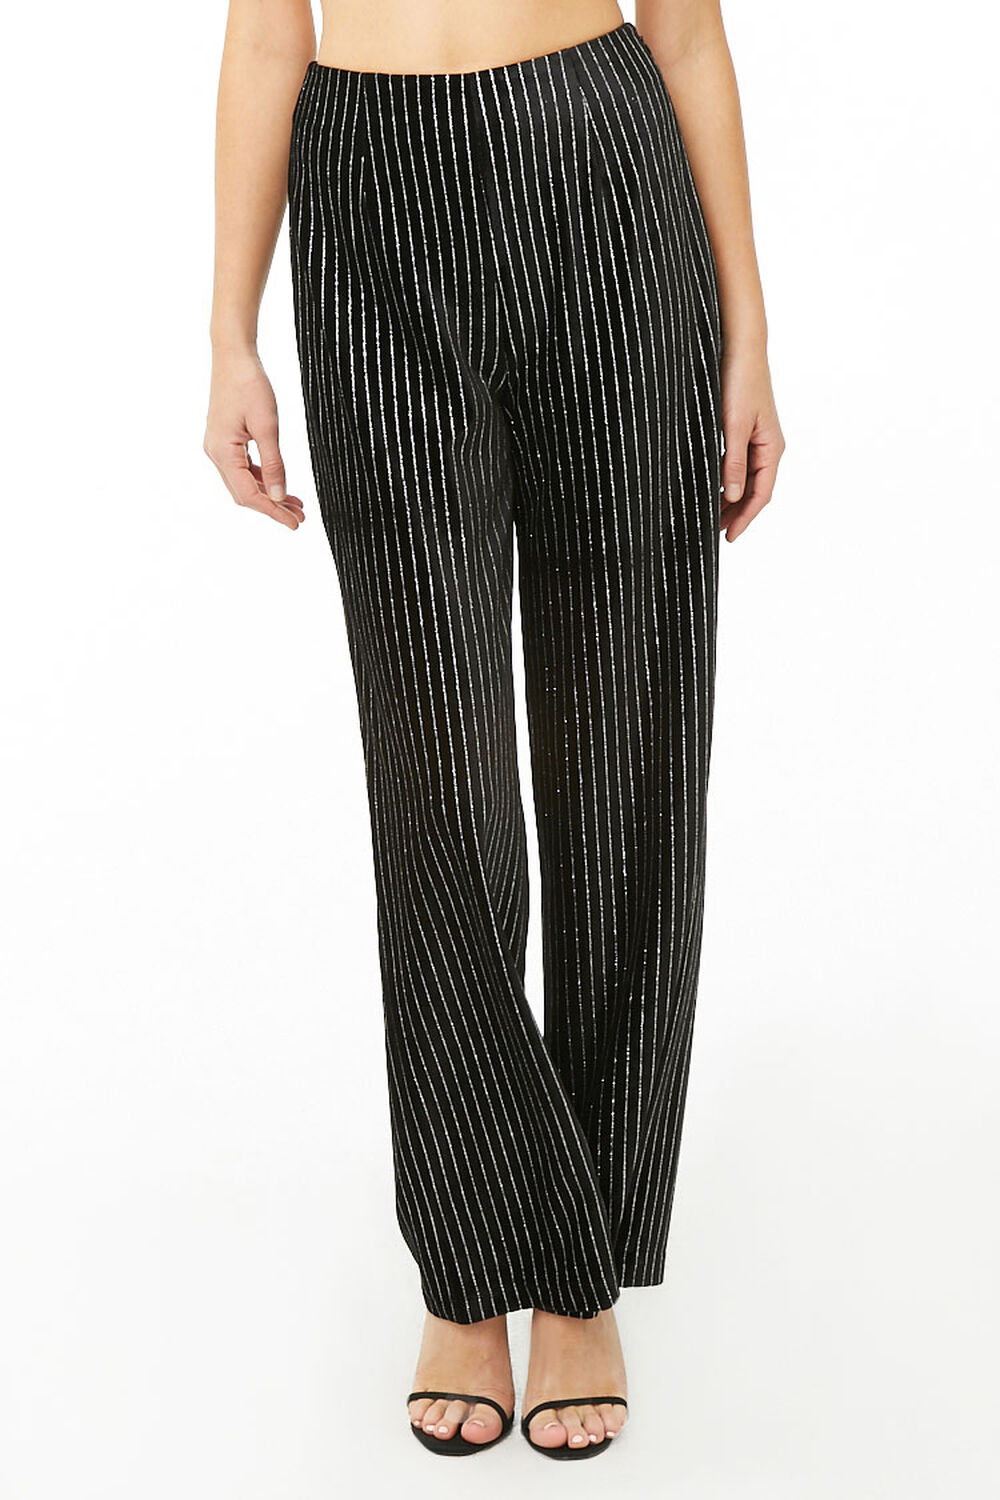 Metallic Striped Pants, image 2